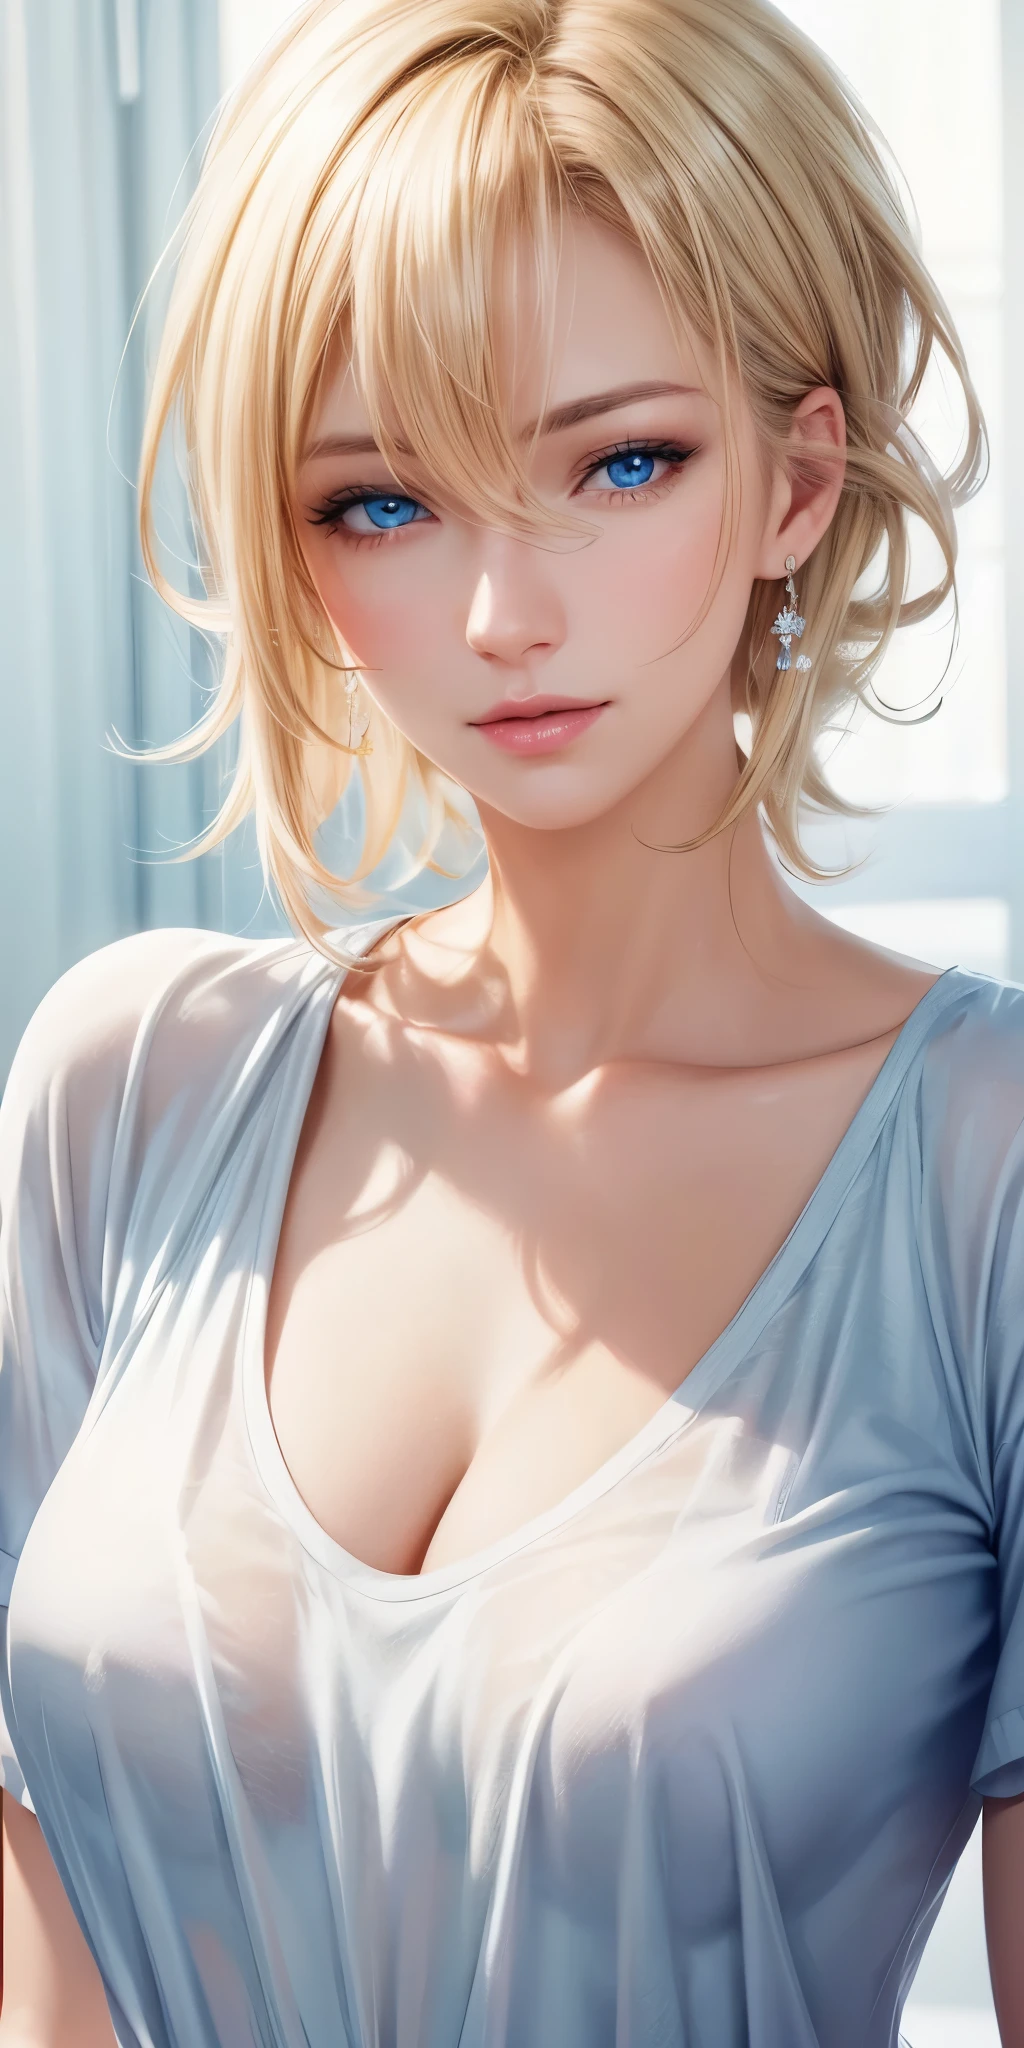 肖像, 实际的, 优雅成熟的女人, 蓝眼睛, 棕色金发, 侧掠式刘海, 4k 分辨率, 高品质 CG, 漂亮的cg, 柔光